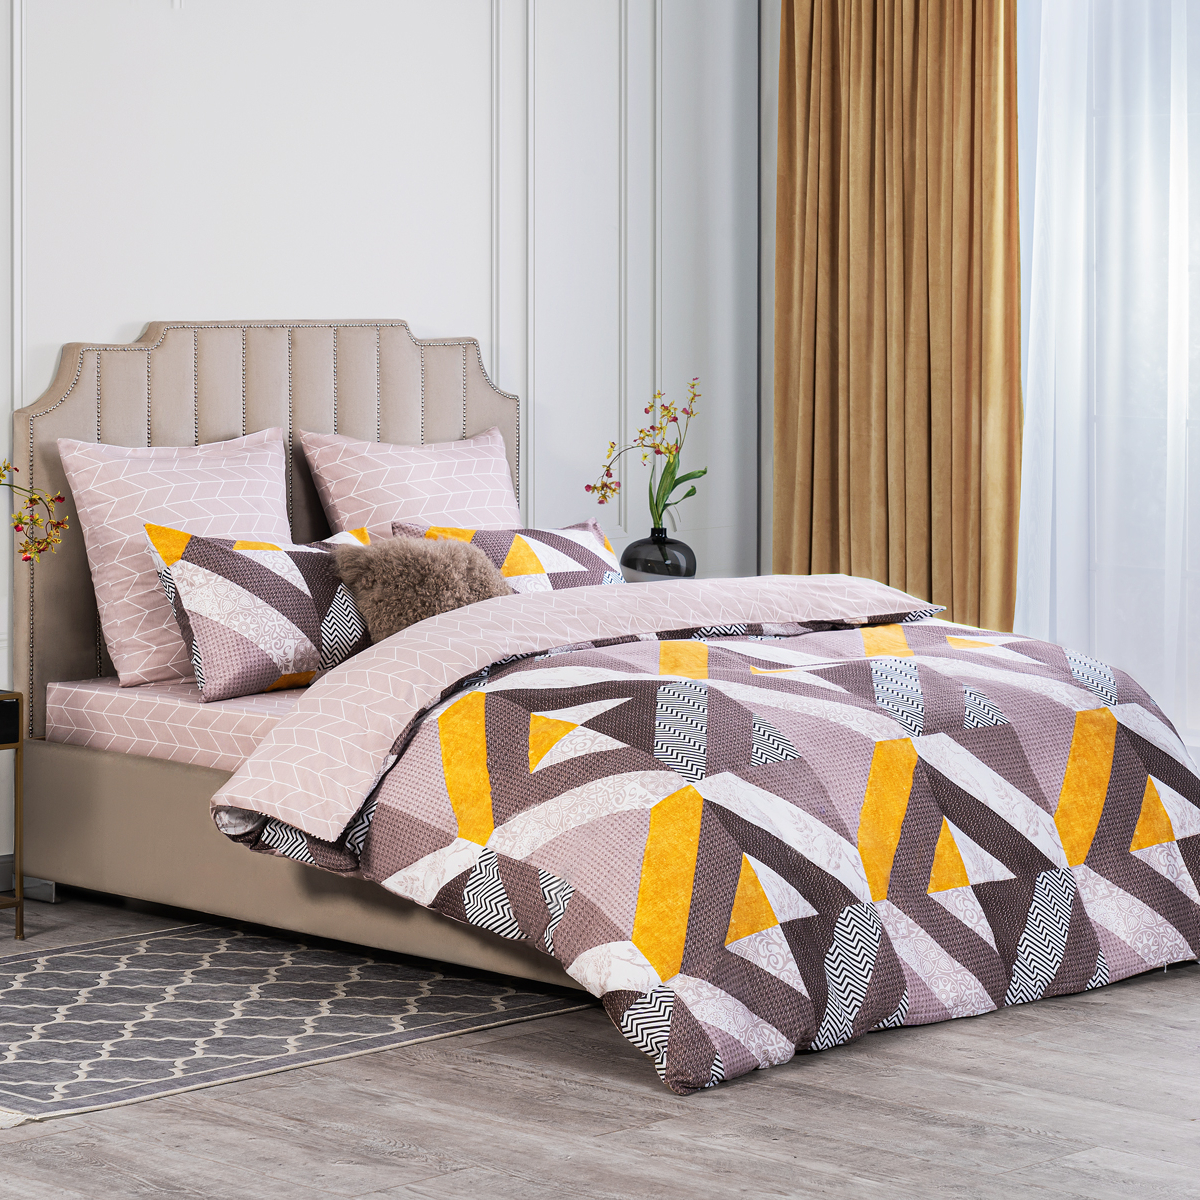 Комплект постельного белья Estia Лафонт разноцветный Полуторный, размер Полуторный - фото 3